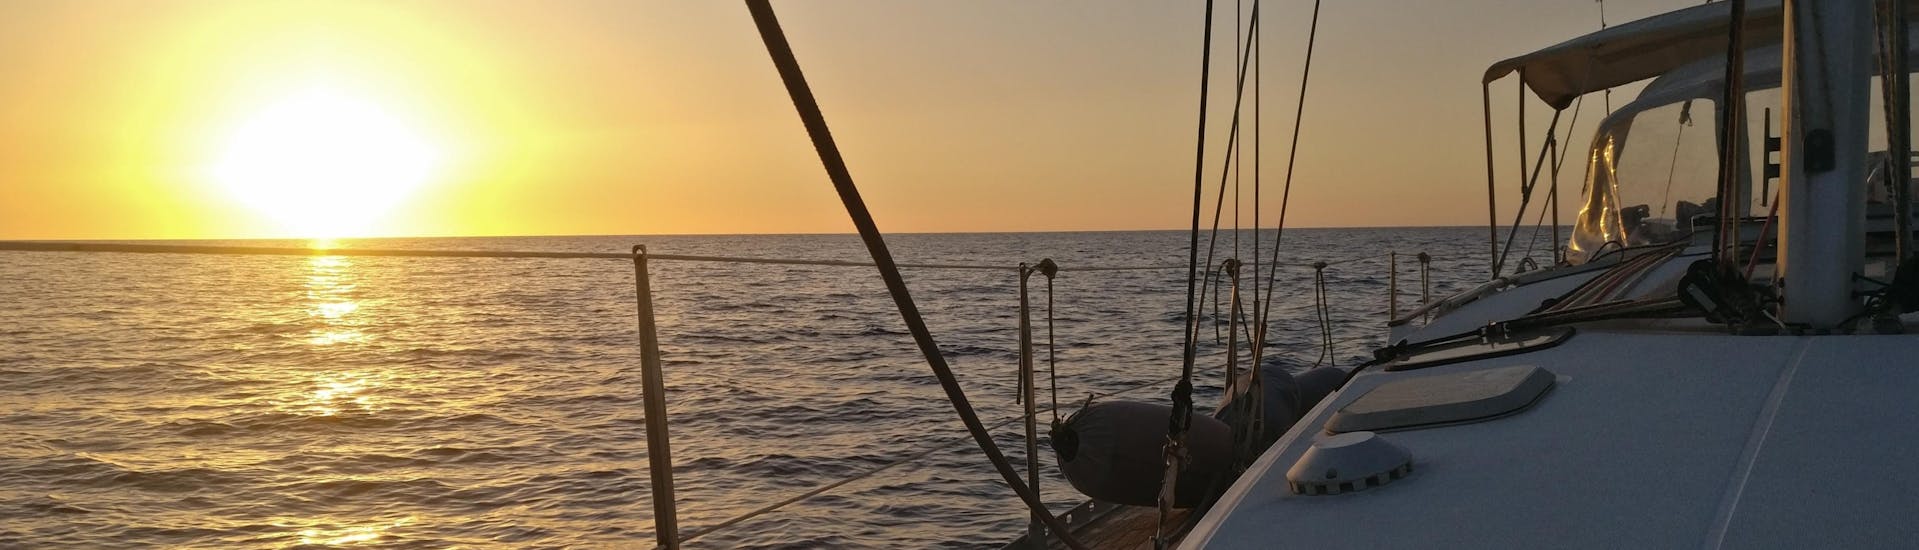 Vista del mare al tramonto da una barca di Quarantesimo Parallelo Leuca.